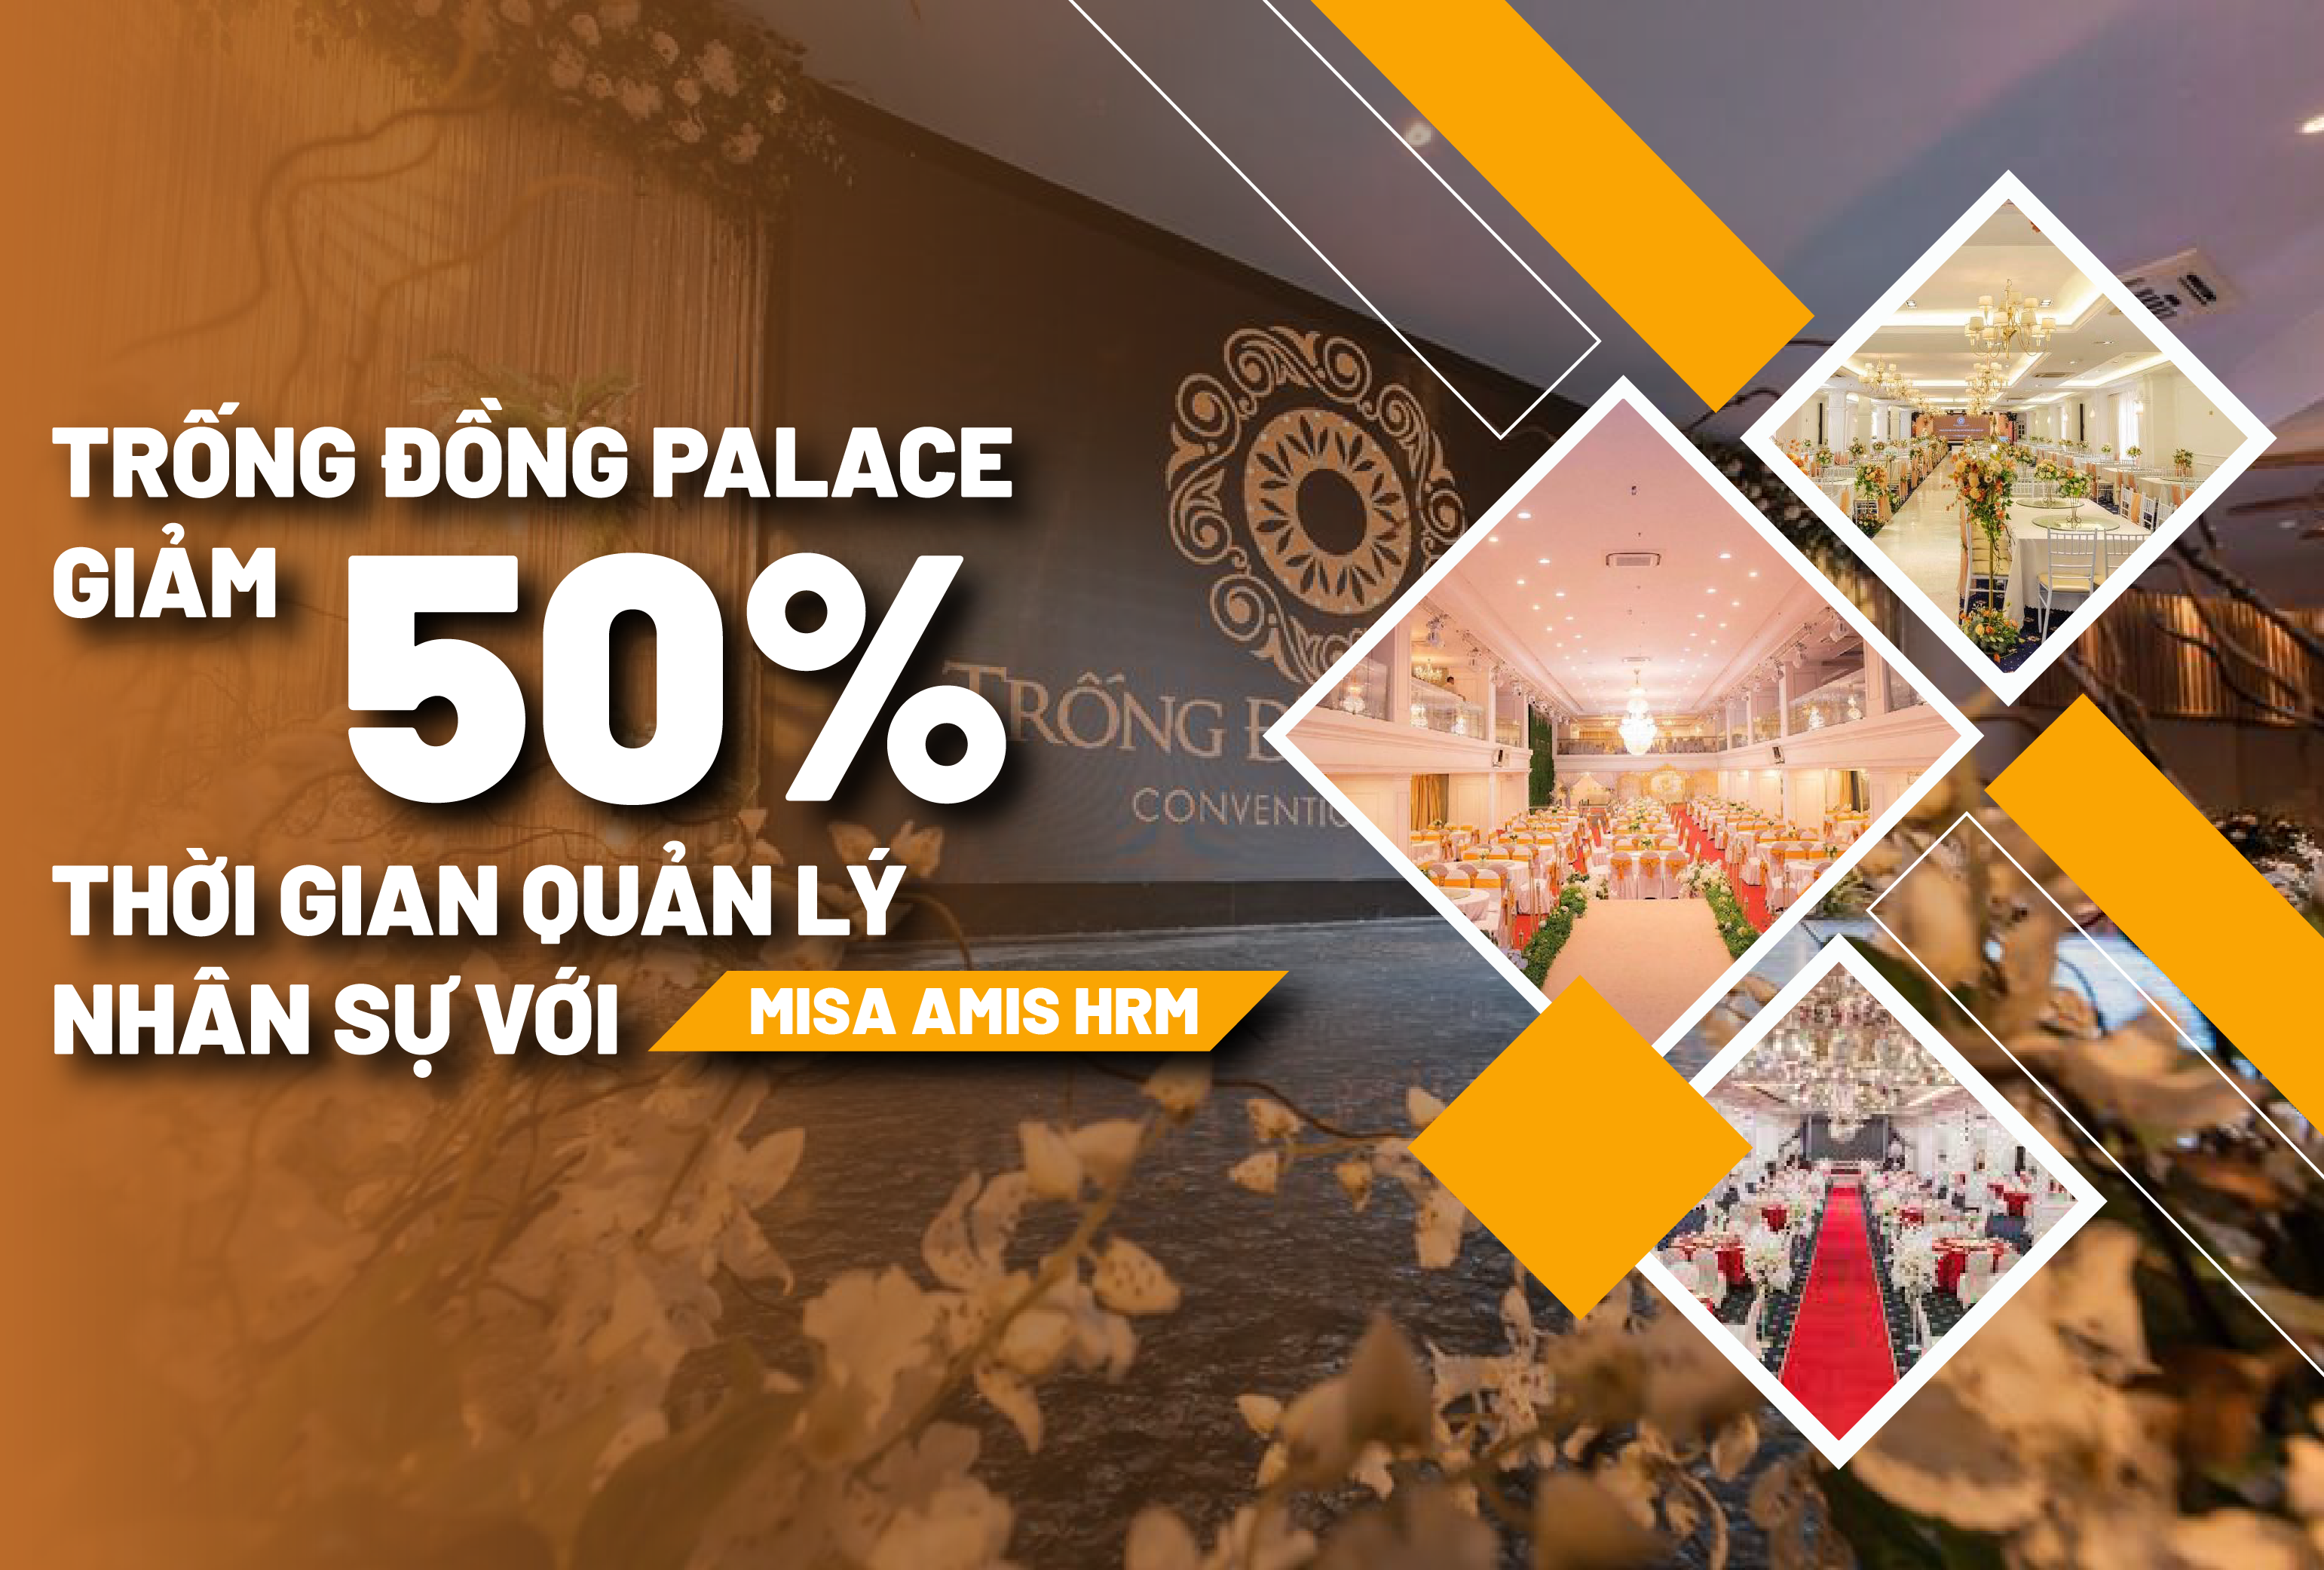 Chuỗi tổ chức sự kiện Trống Đồng Palace thành công triệt tiêu 50% thời gian lãng phí trong quản lý